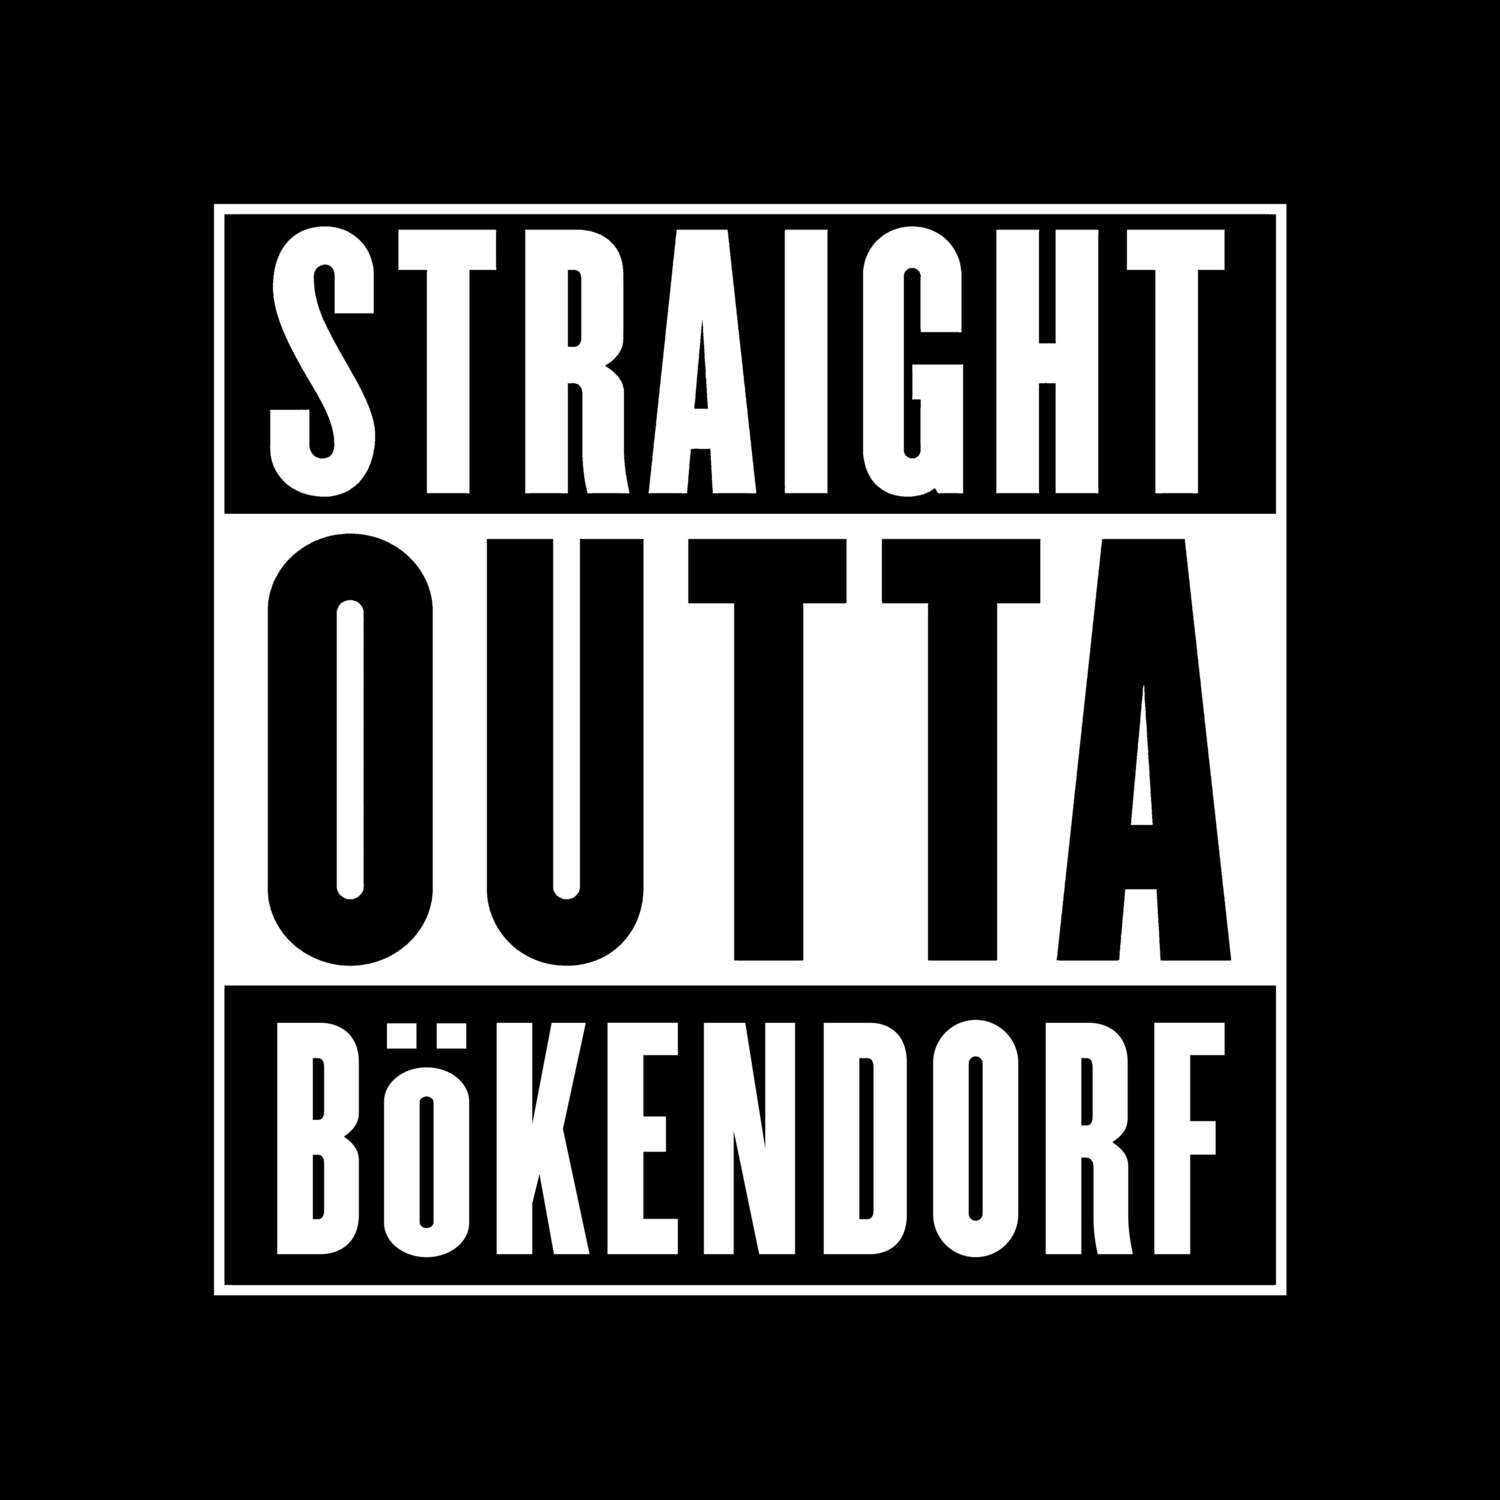 Bökendorf T-Shirt »Straight Outta«